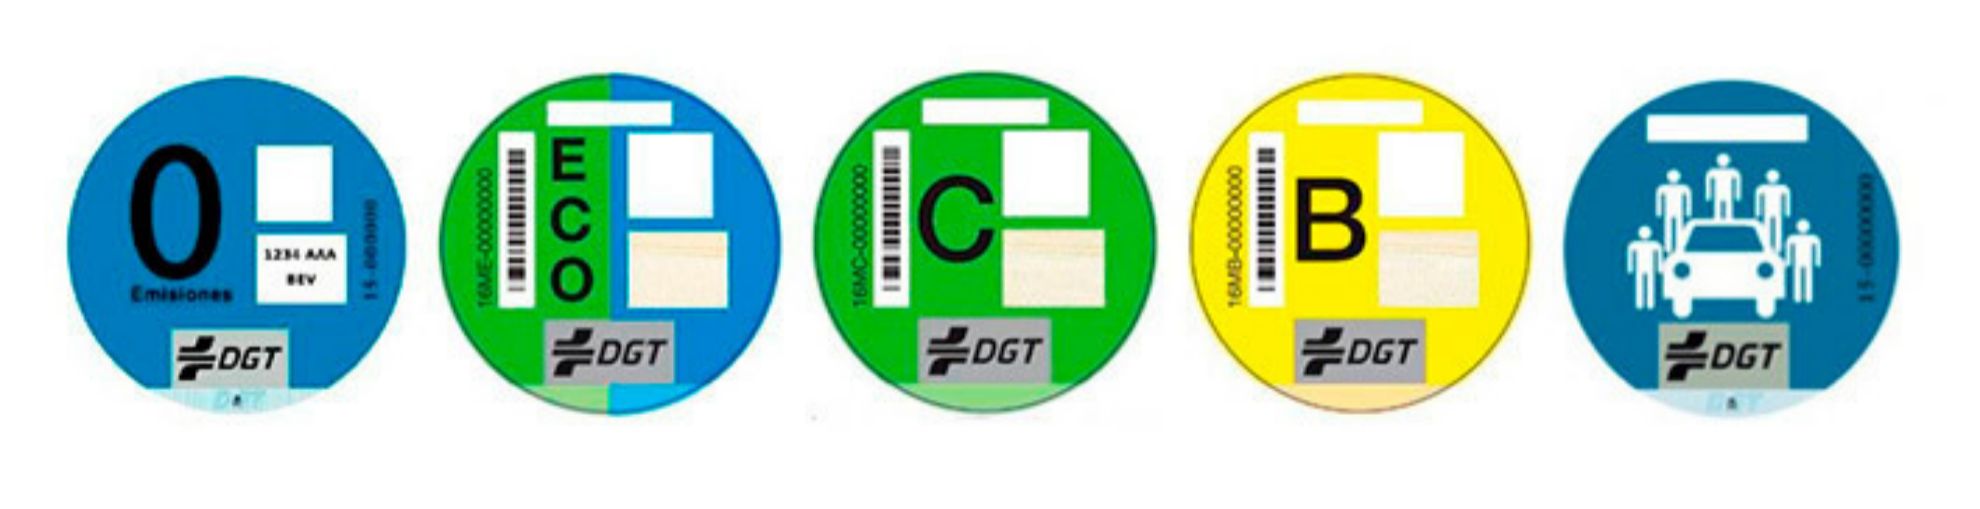 DGT - etiquetas medioambientales - car sharing - coche compartido -...